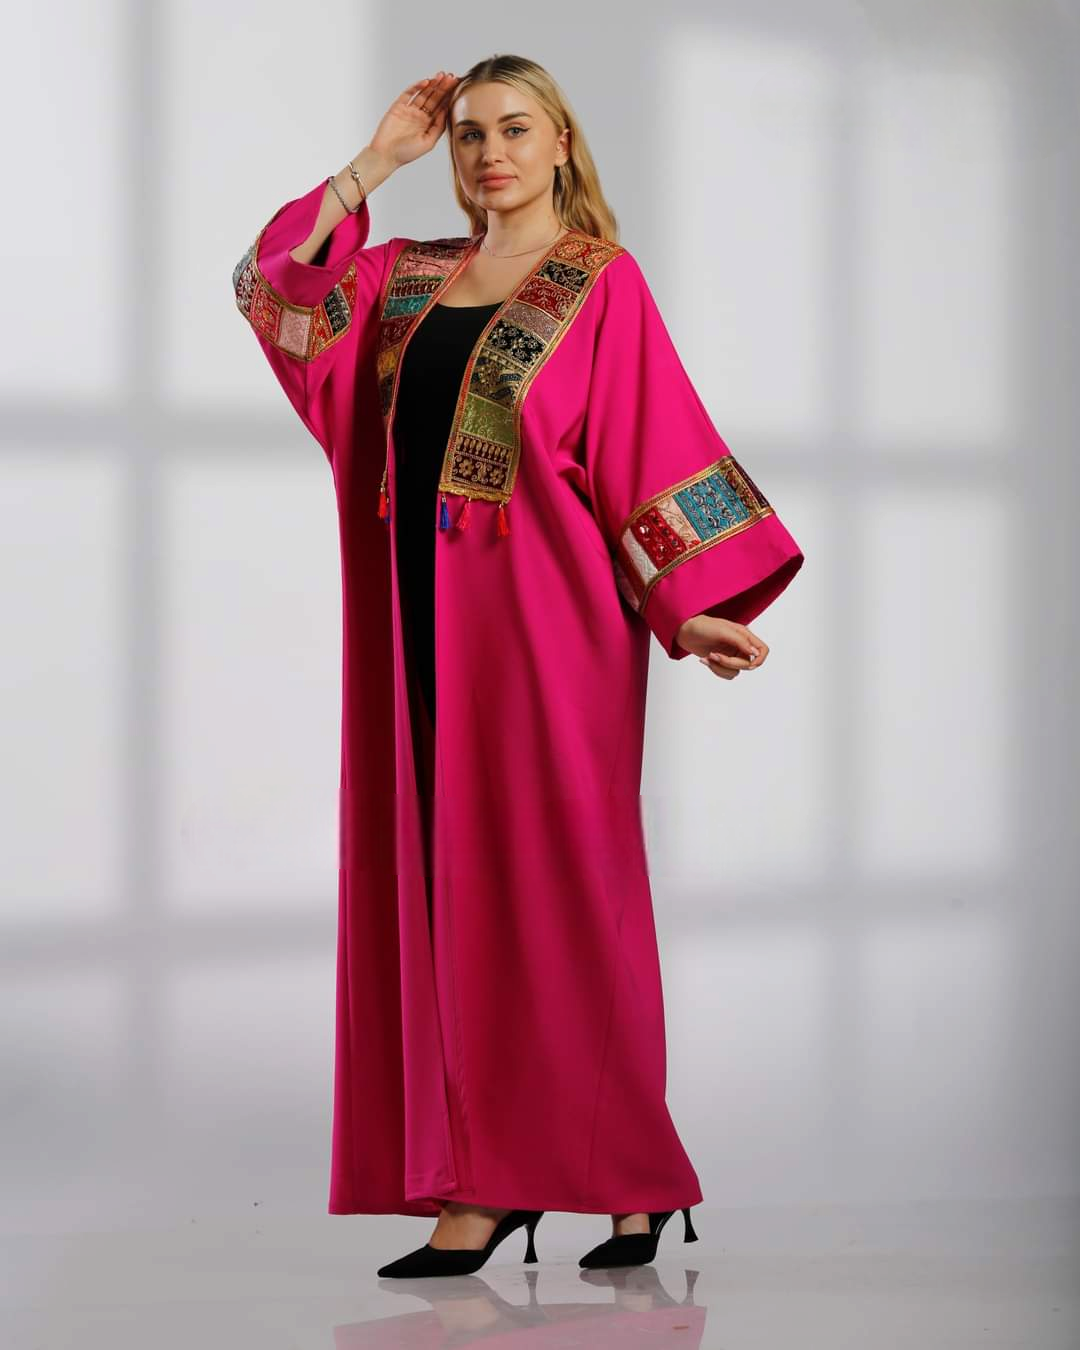 Pretty Abaya -  Embroidered Palestinian style Abaya